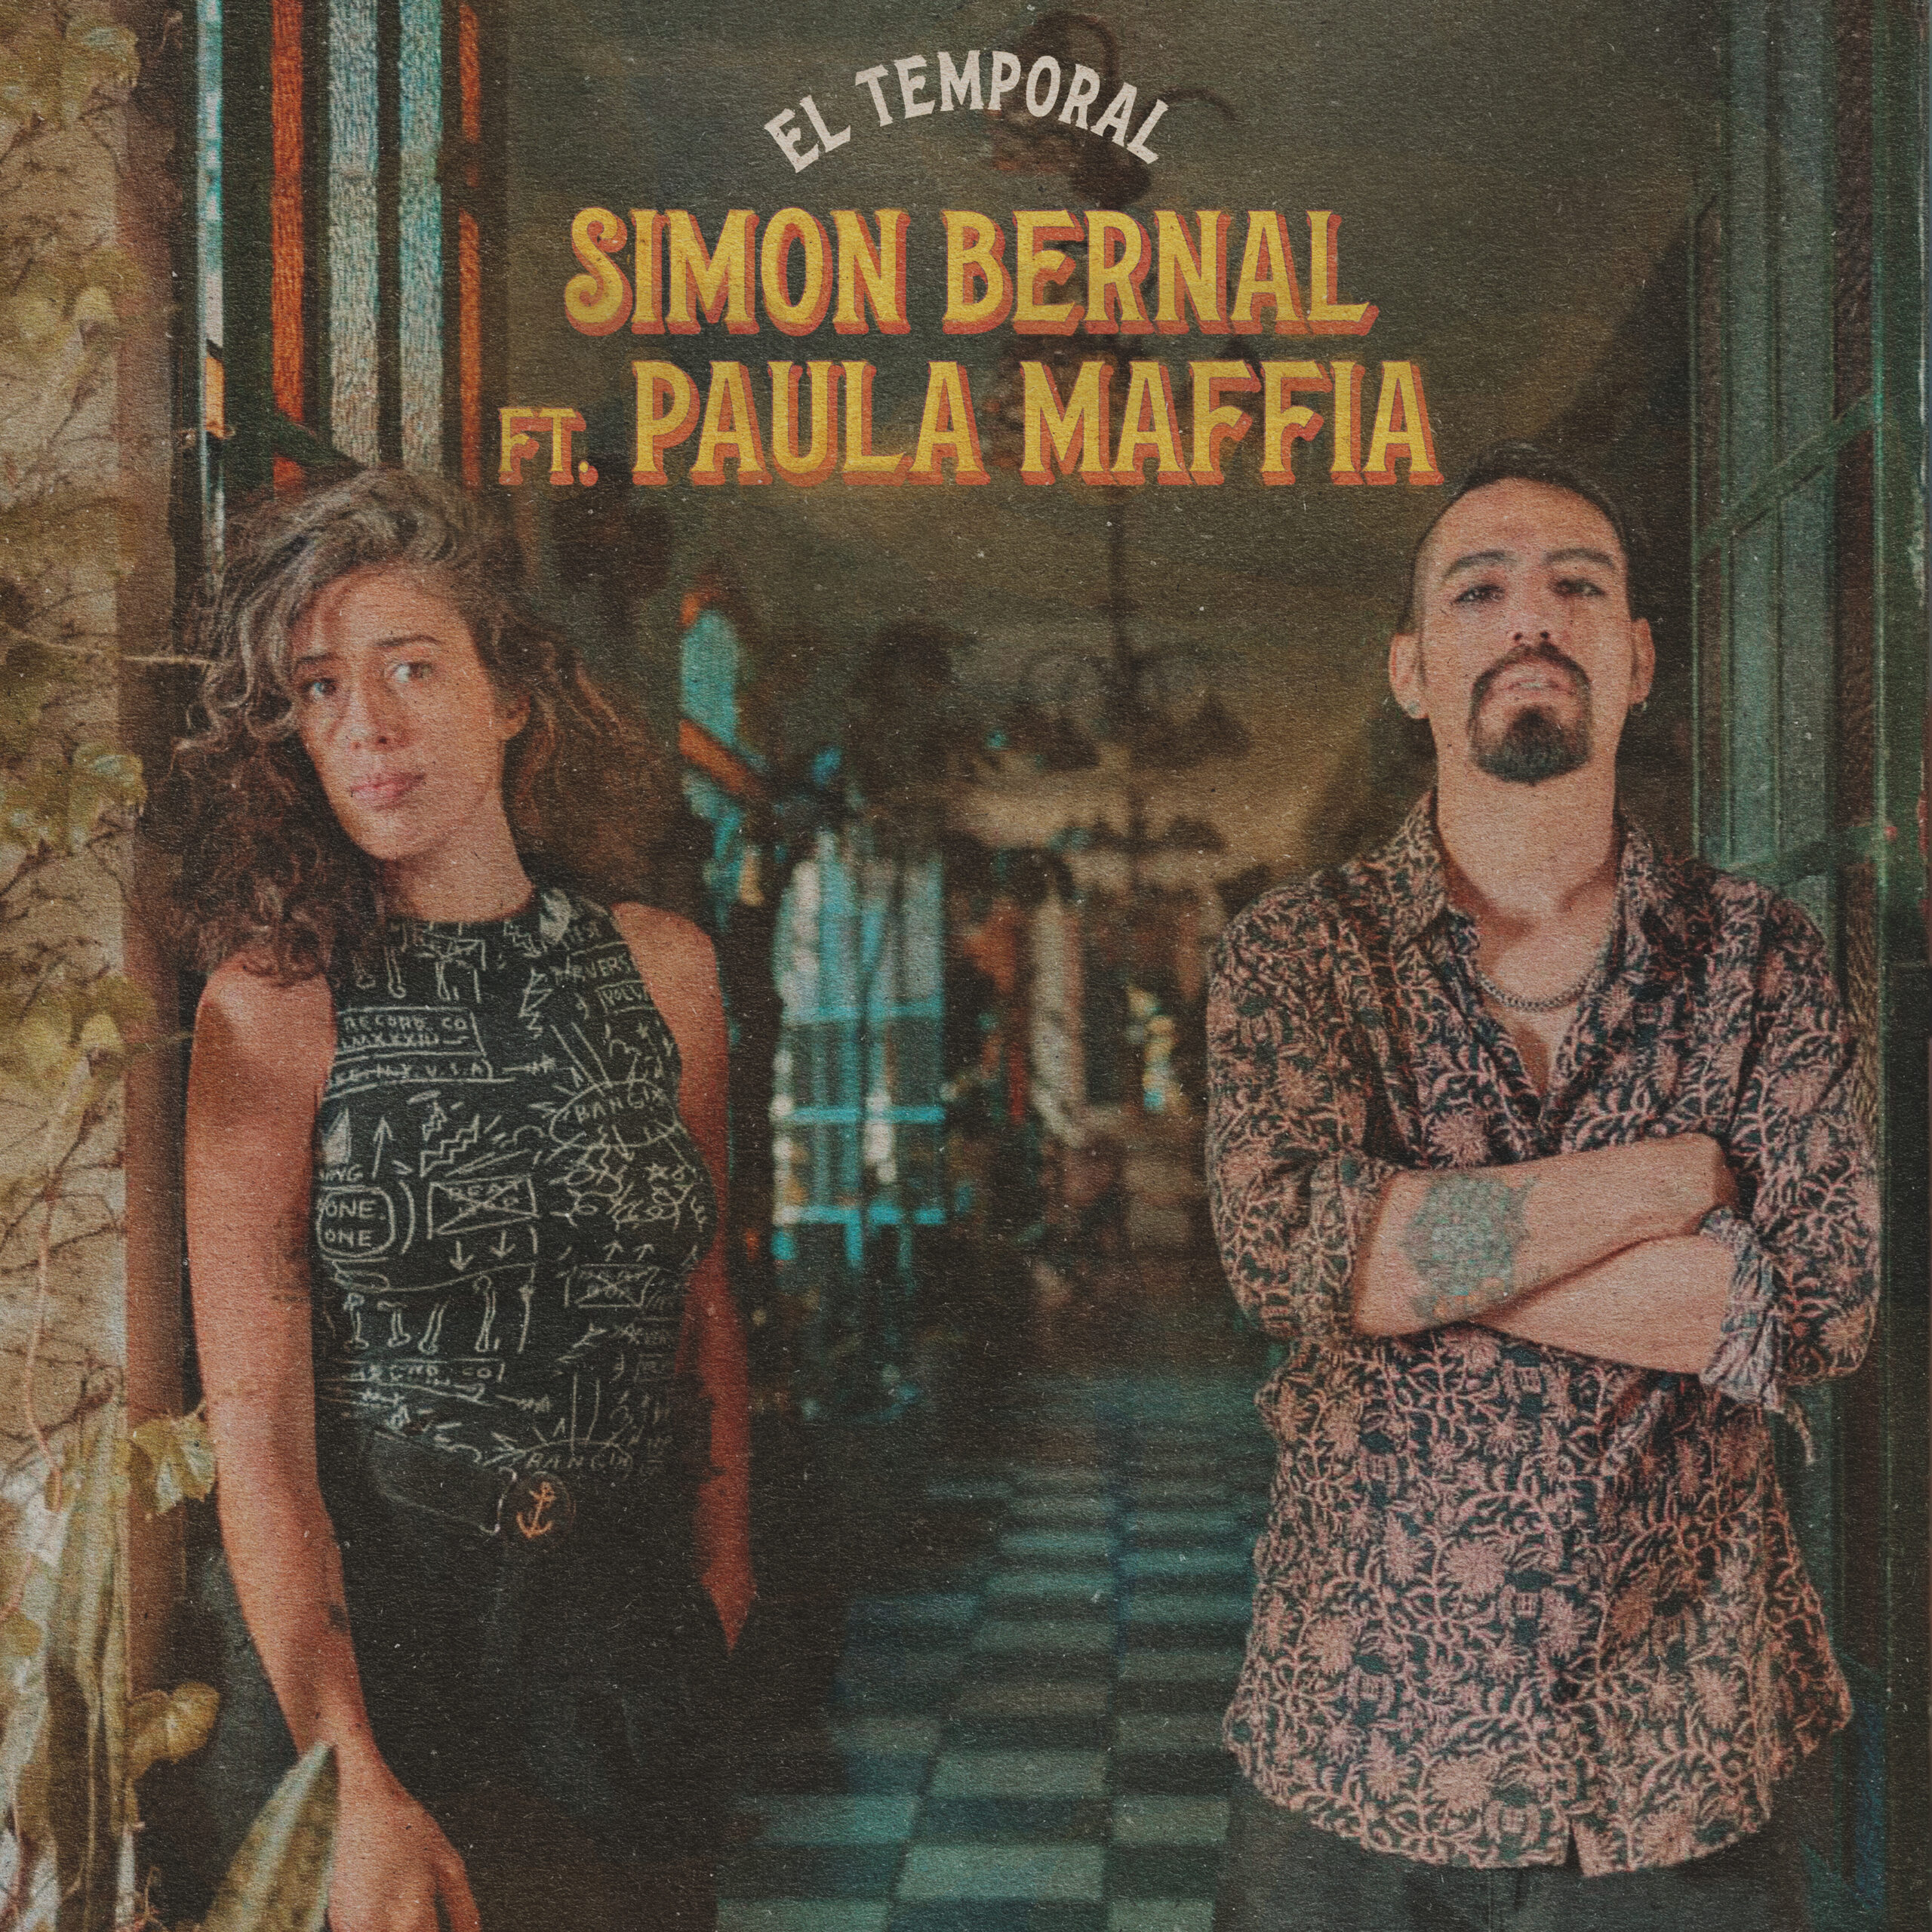  Simón Bernal feat. Paula Maffia  y “El temporal”